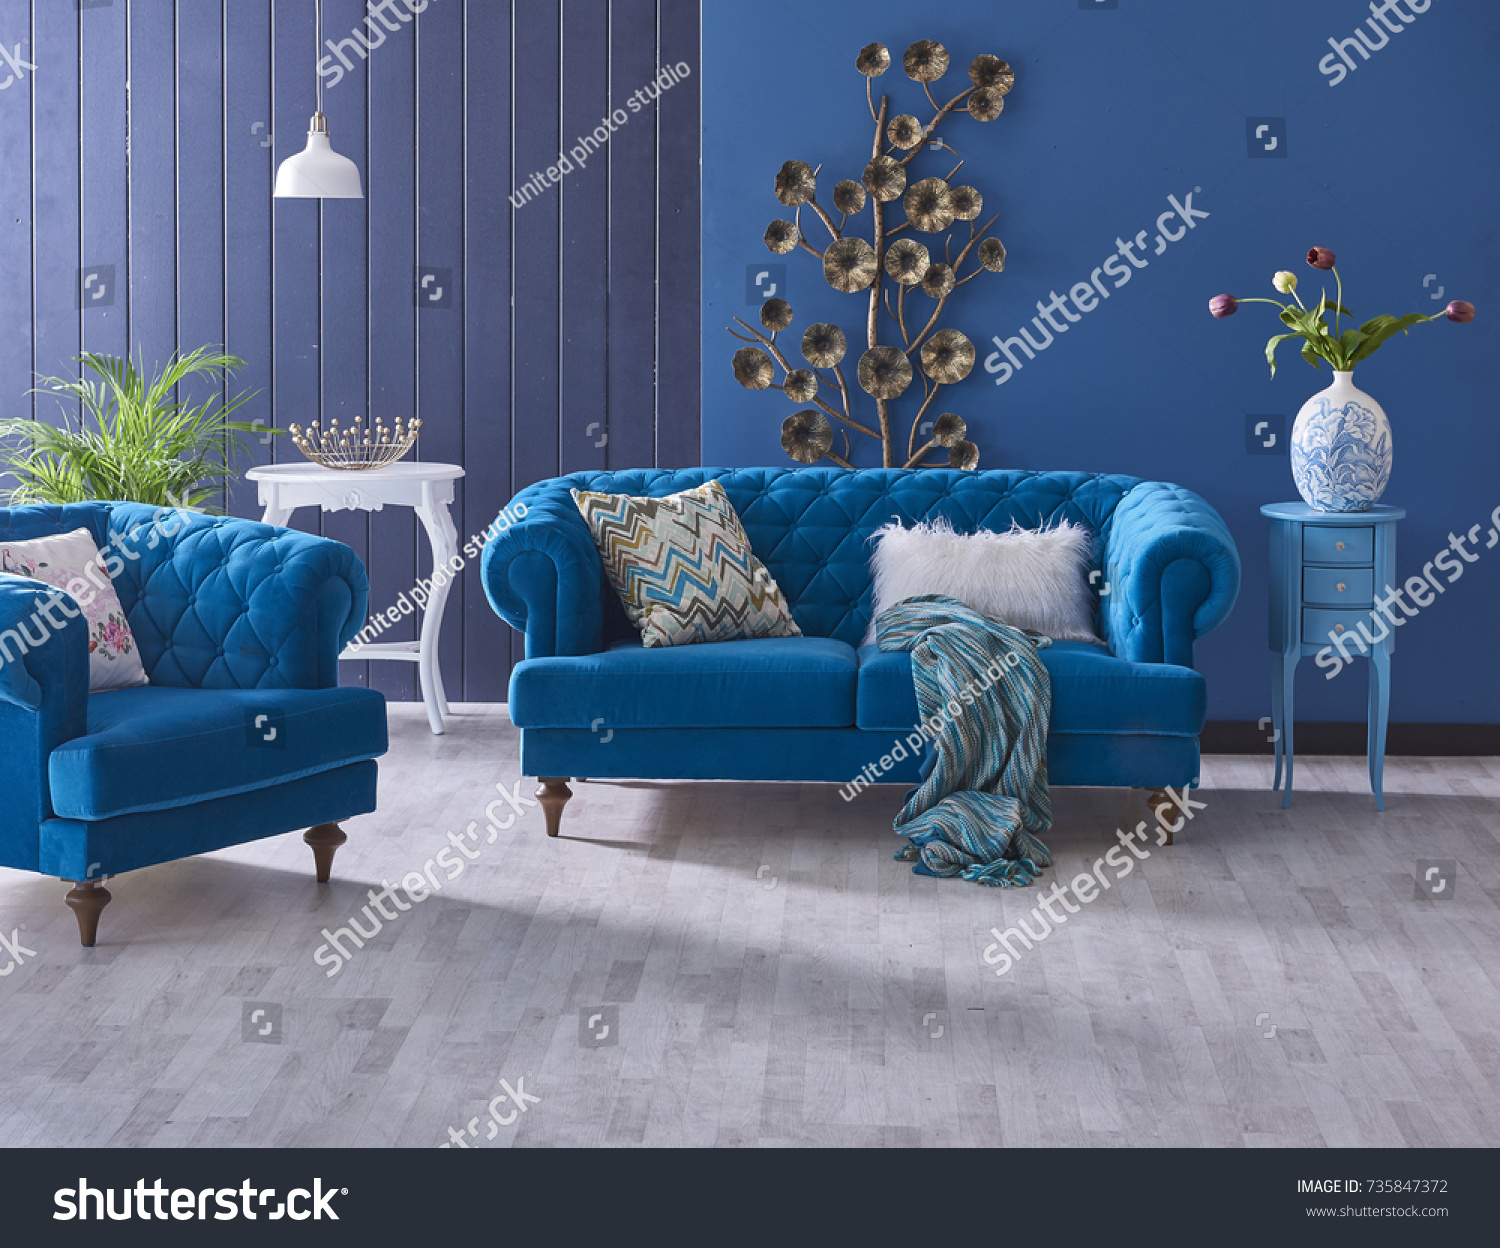 Turkisblaues Sofa Klassisches Wohnzimmer Dekoration Grau